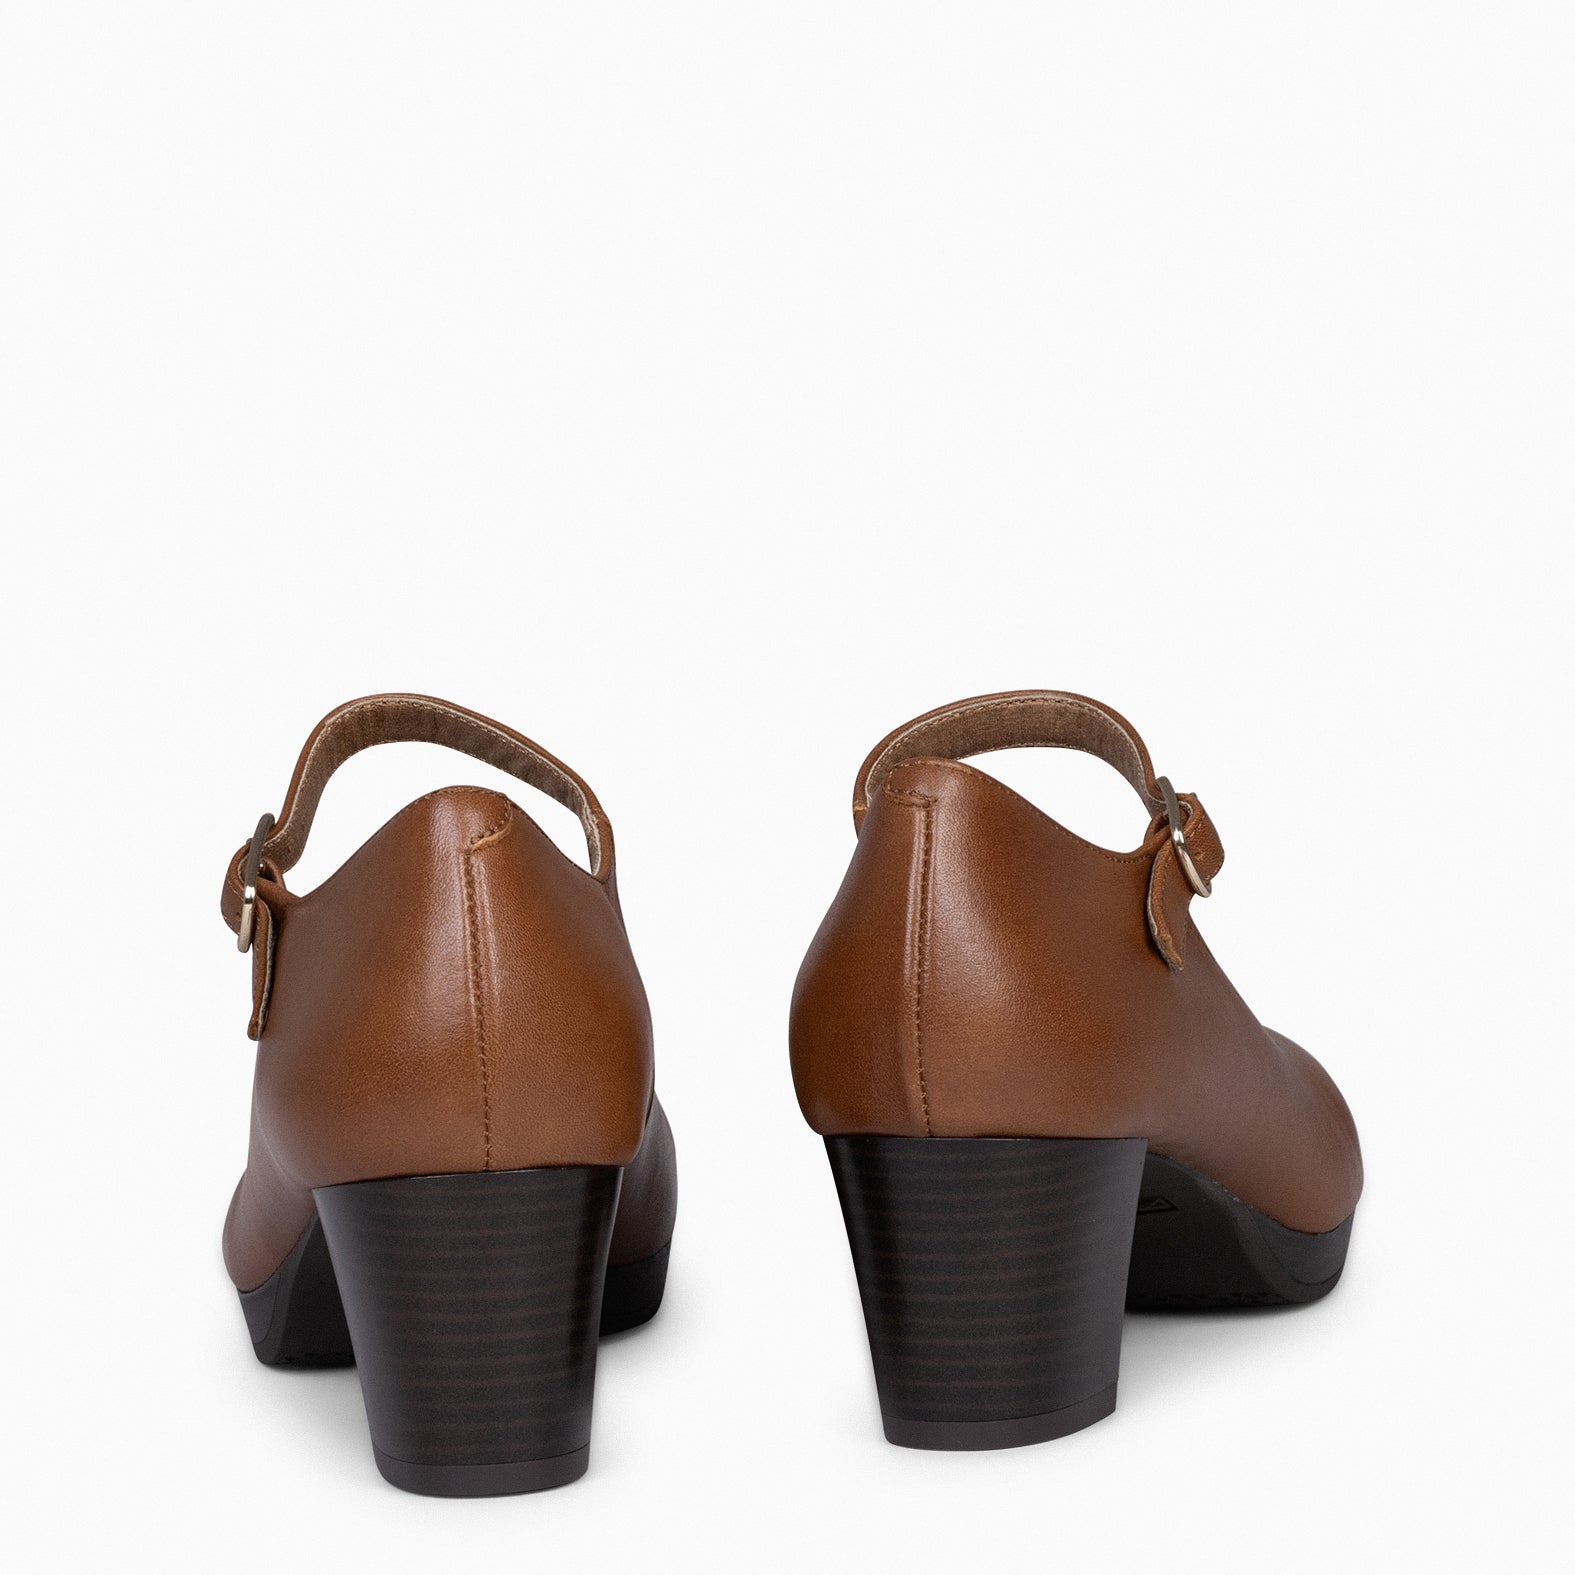 AZAFATA PULSERA – Zapatos de mujer con plataforma y tacón bajo CAMEL